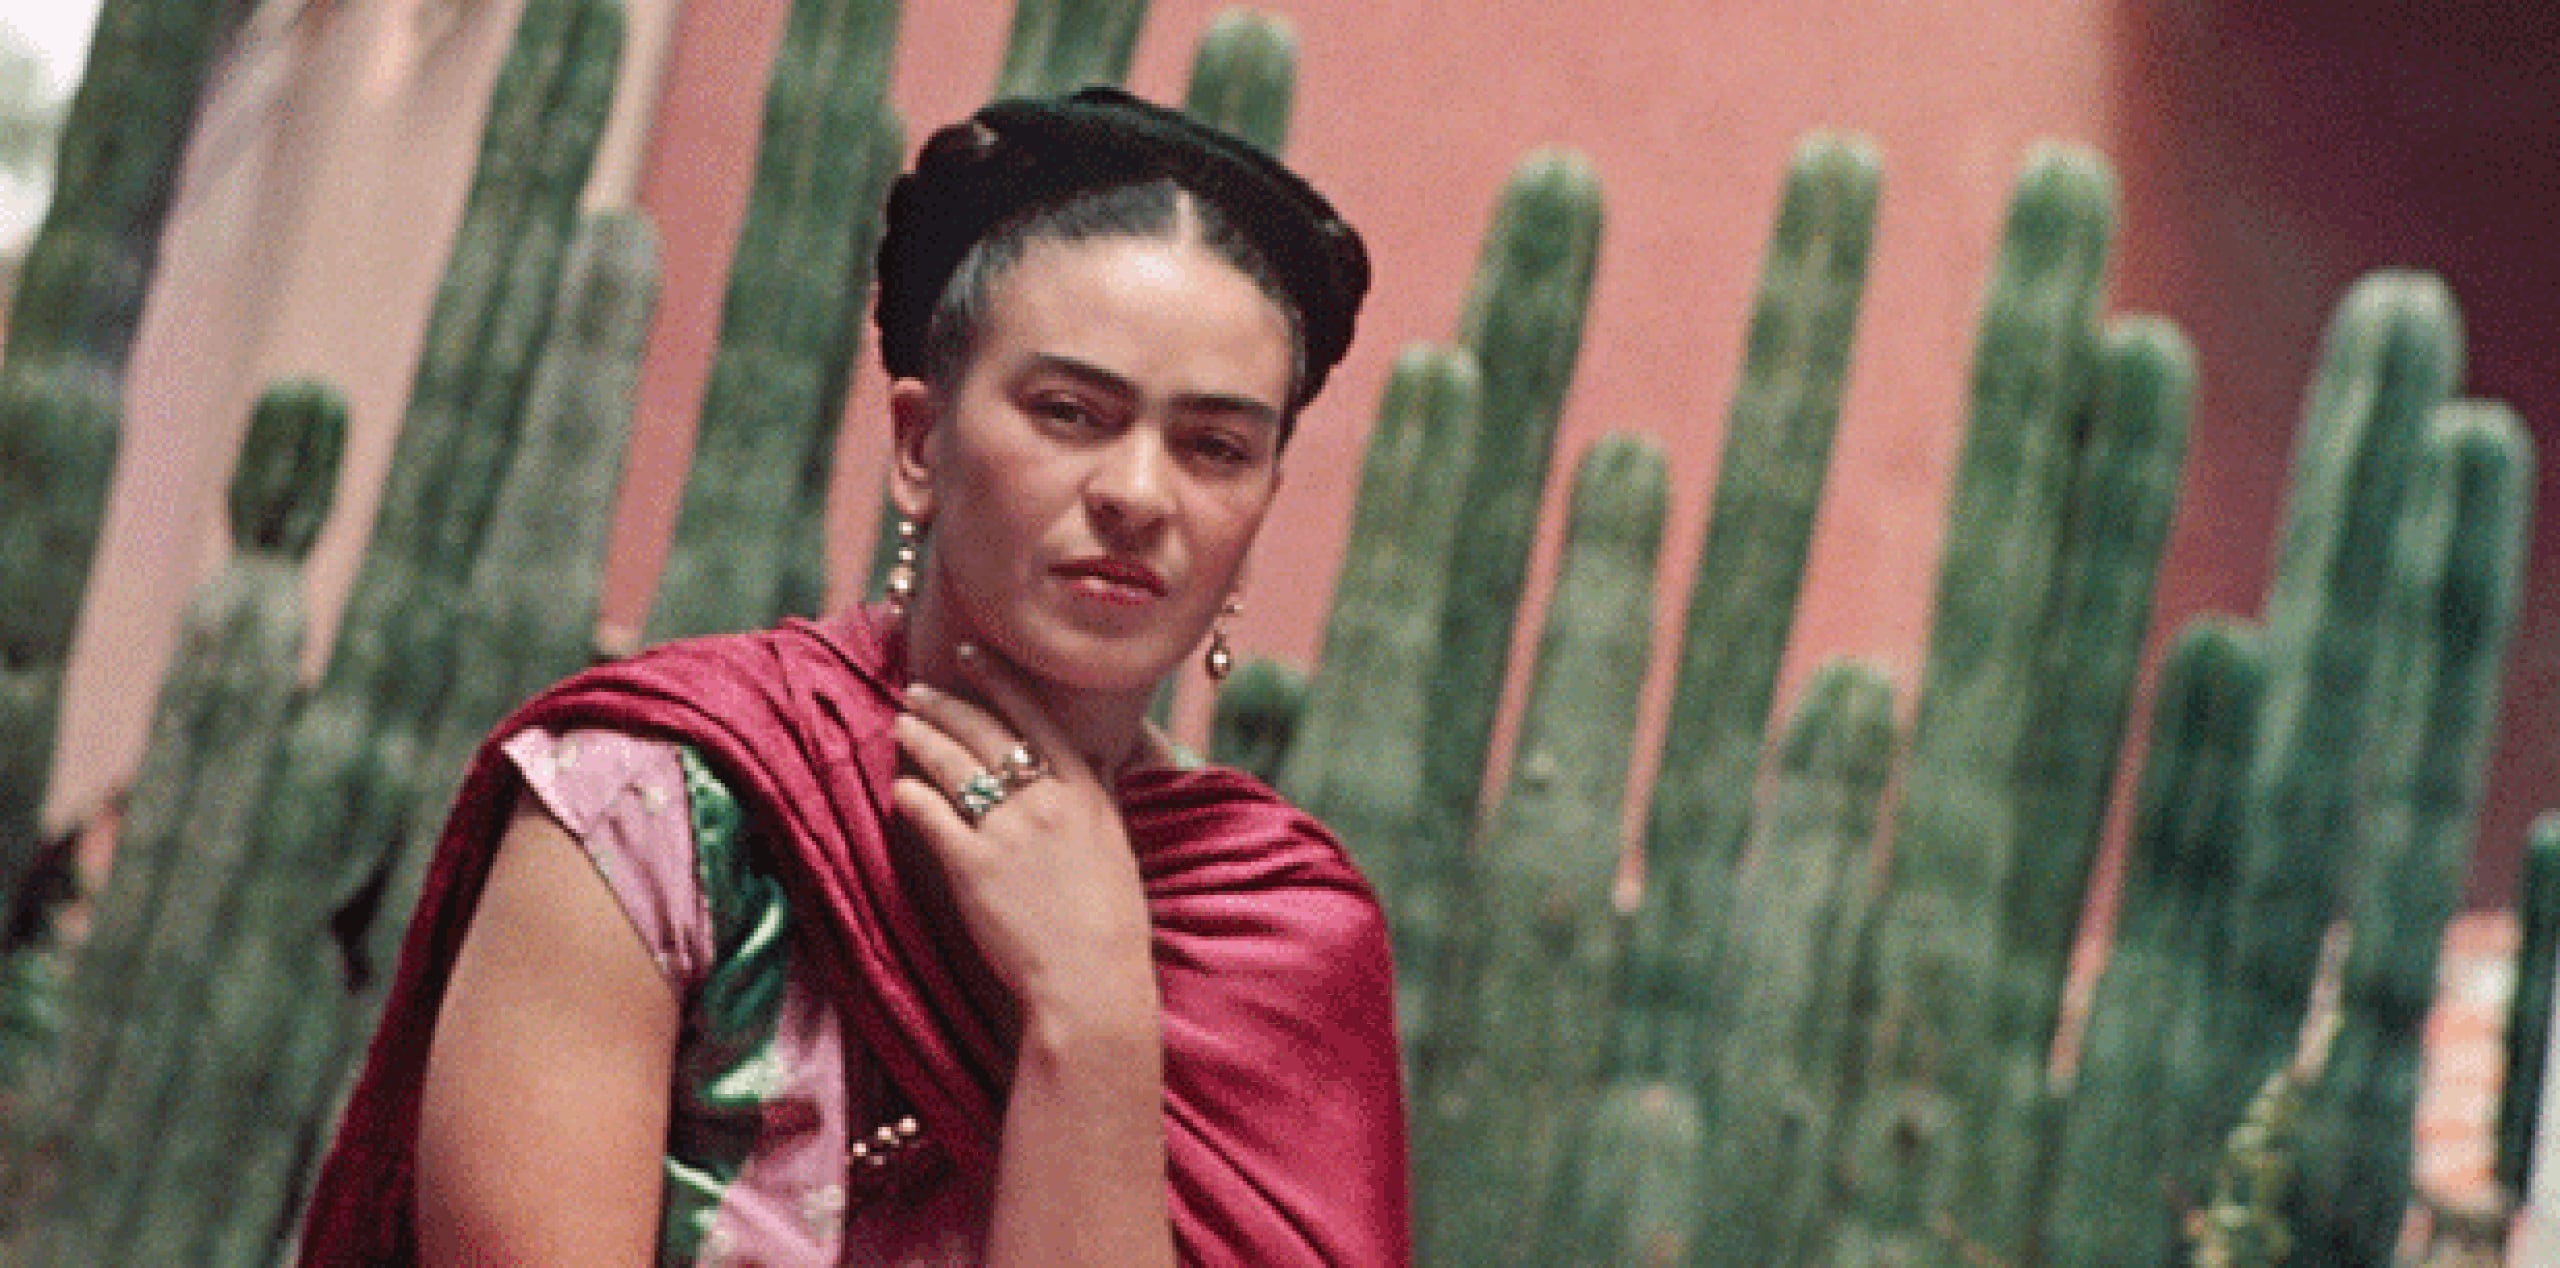 La exposición, que estará abierta hasta el 1 de noviembre, le sigue a otra realizada en Detroit en marzo sobre la etapa de la pintora en esa ciudad y una más celebrada en Florida el mismo mes sobre obras de Kahlo y Rivera. (EFE)